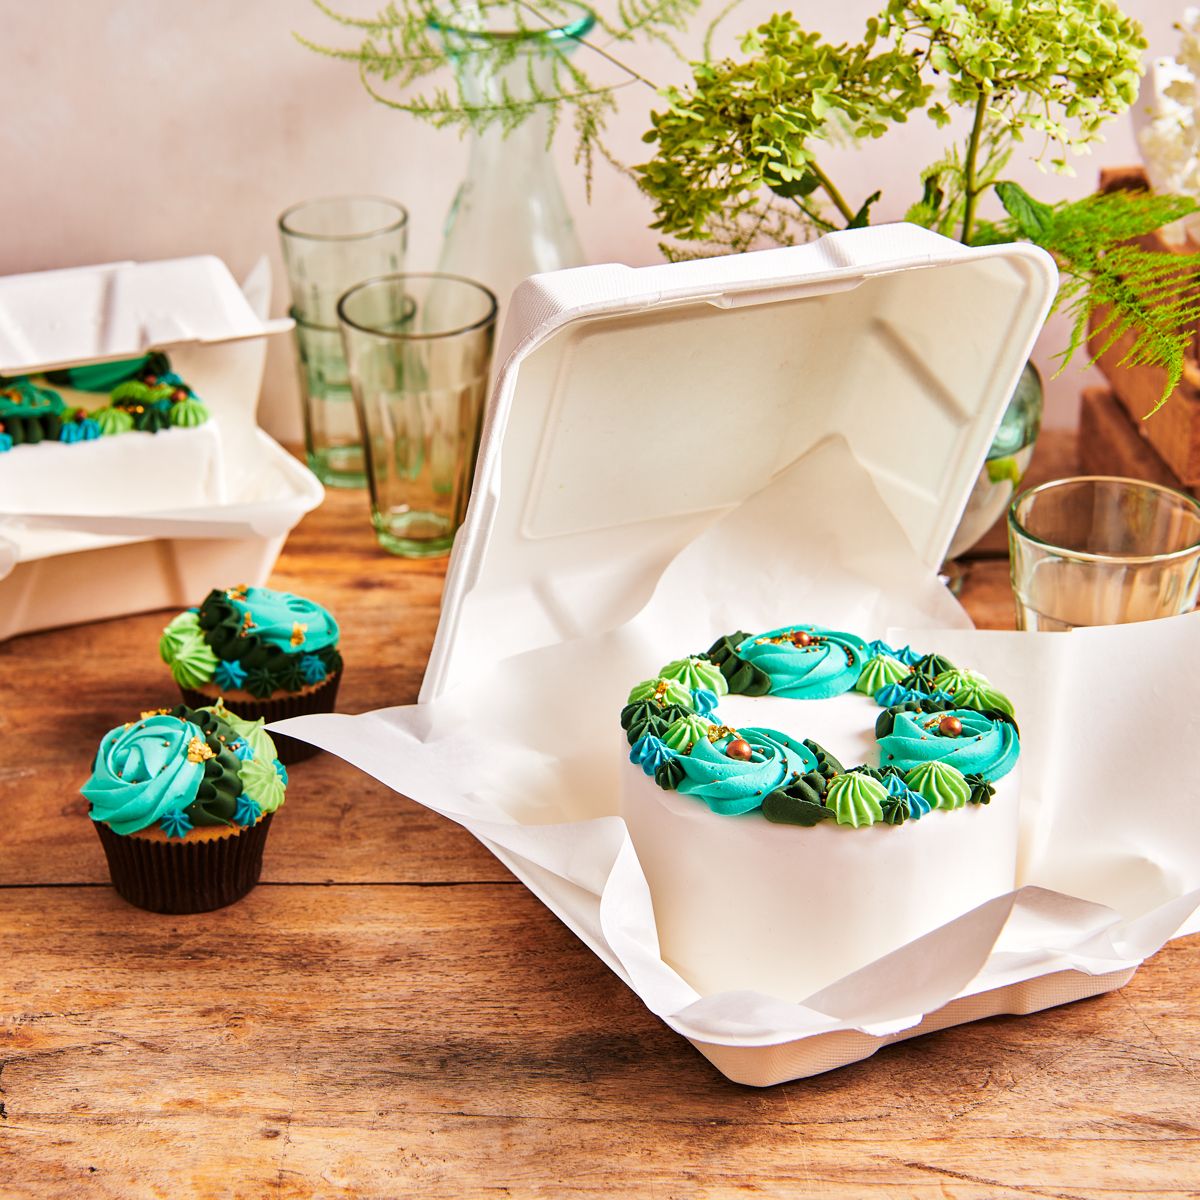 Caissettes à muffins 3,8cm Bleu x20 - Perle Dorée